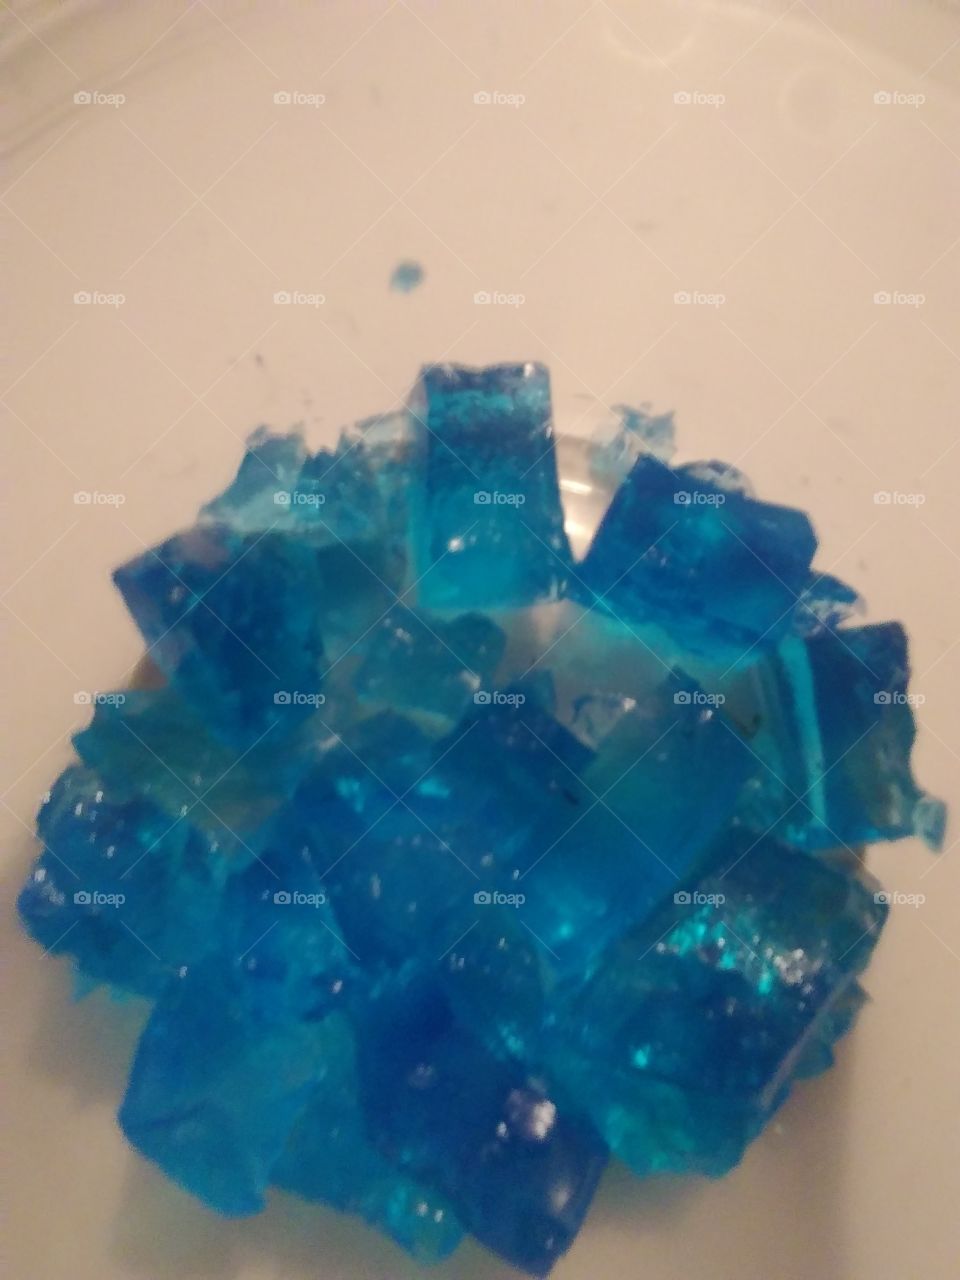 aqua blue cubes